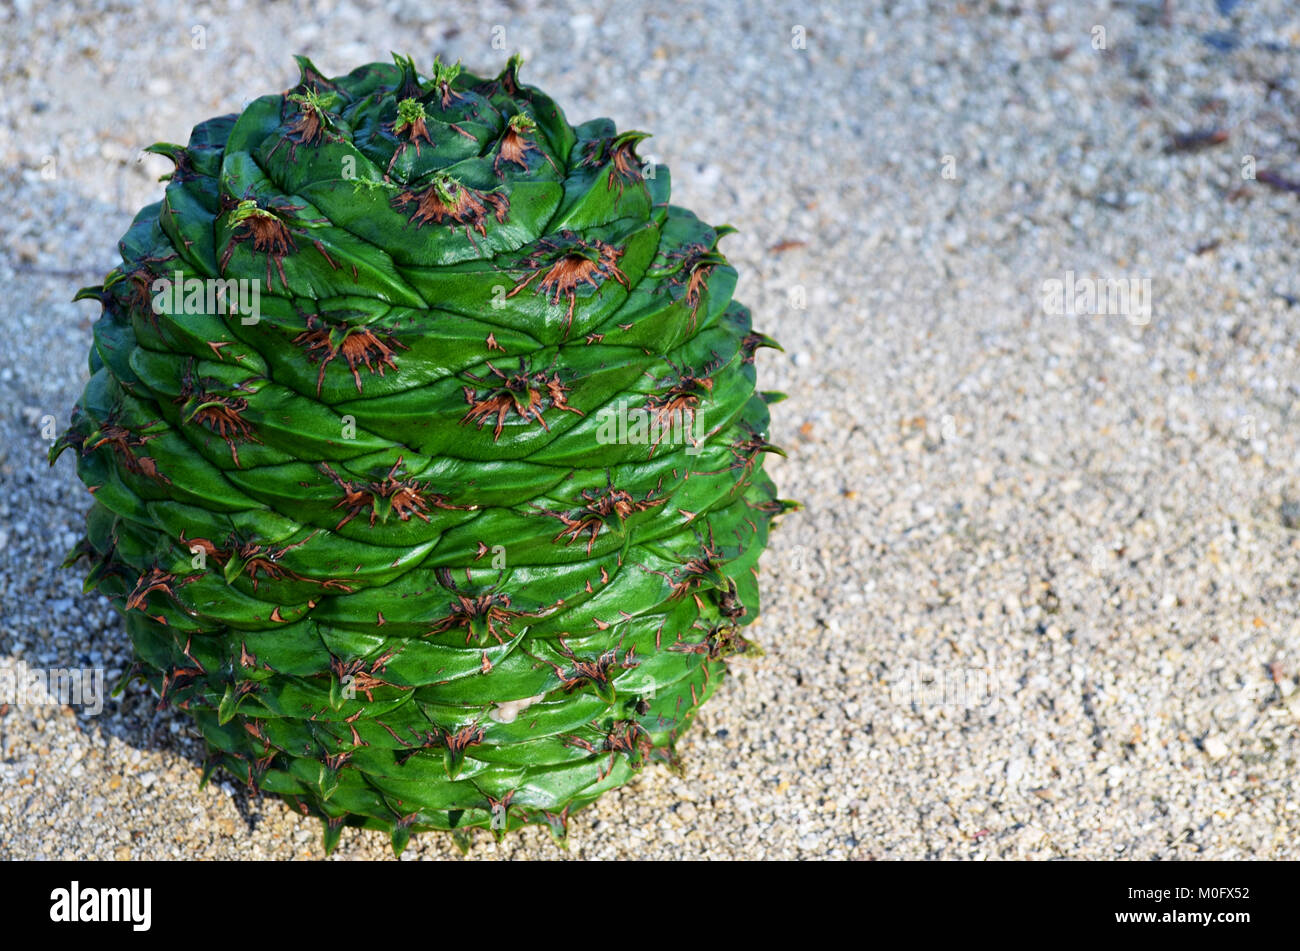 Pine cone from Bunya pine tree Stock Photo